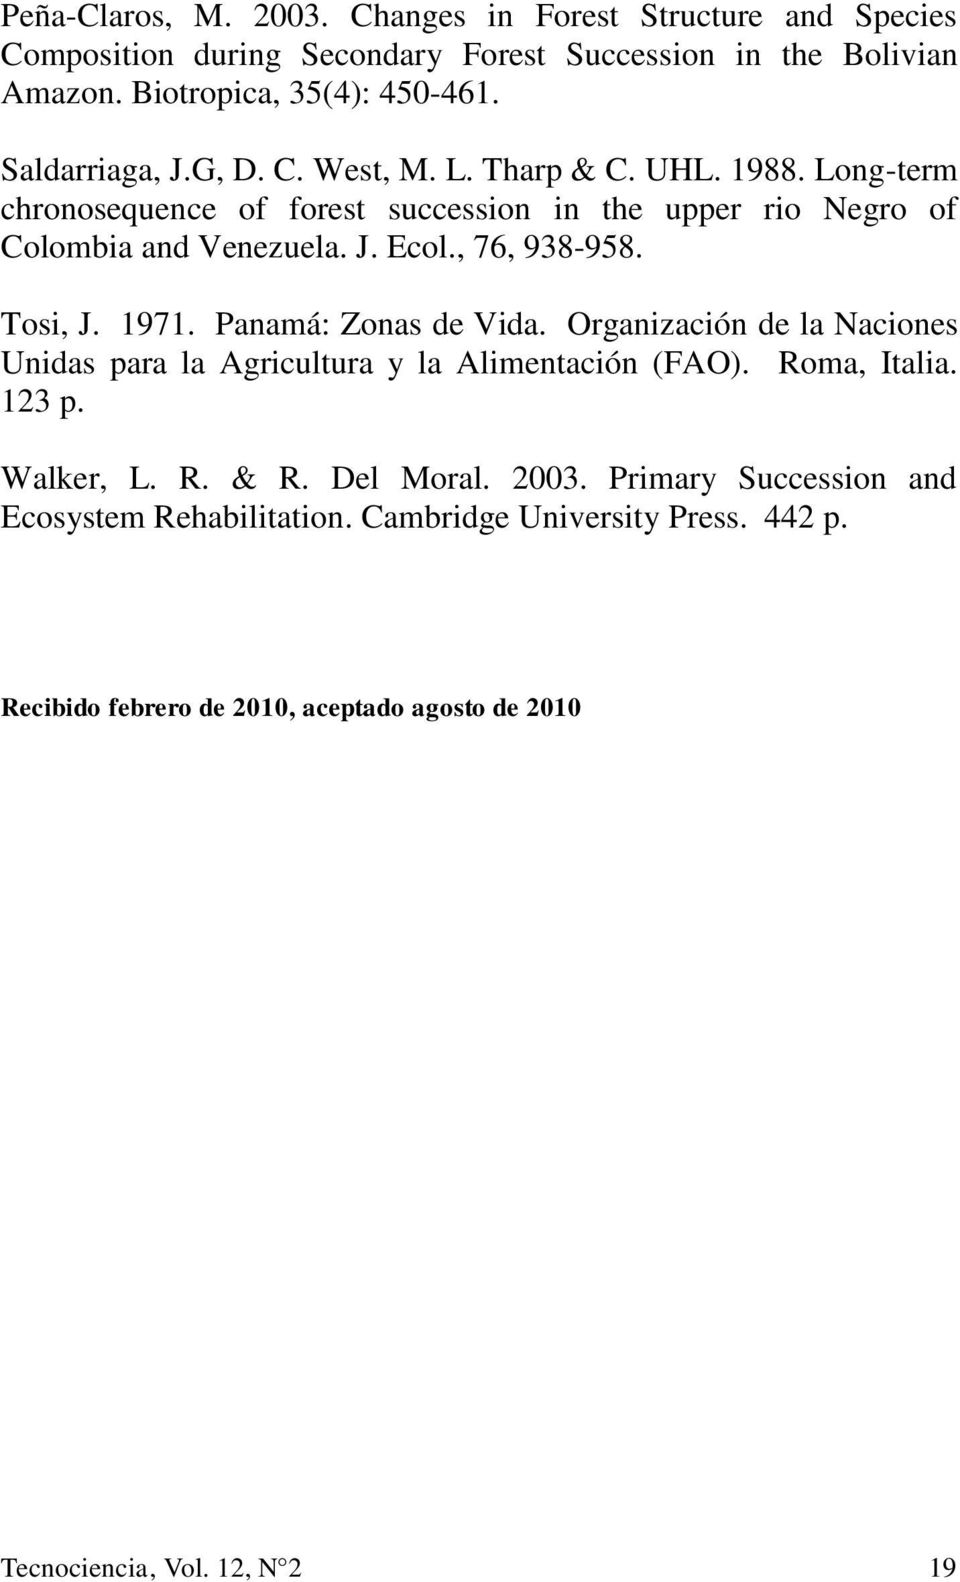 , 76, 938-958. Tosi, J. 1971. Panamá: Zonas de Vida. Organización de la Naciones Unidas para la Agricultura y la Alimentación (FAO). Roma, Italia. 123 p. Walker, L. R. & R.